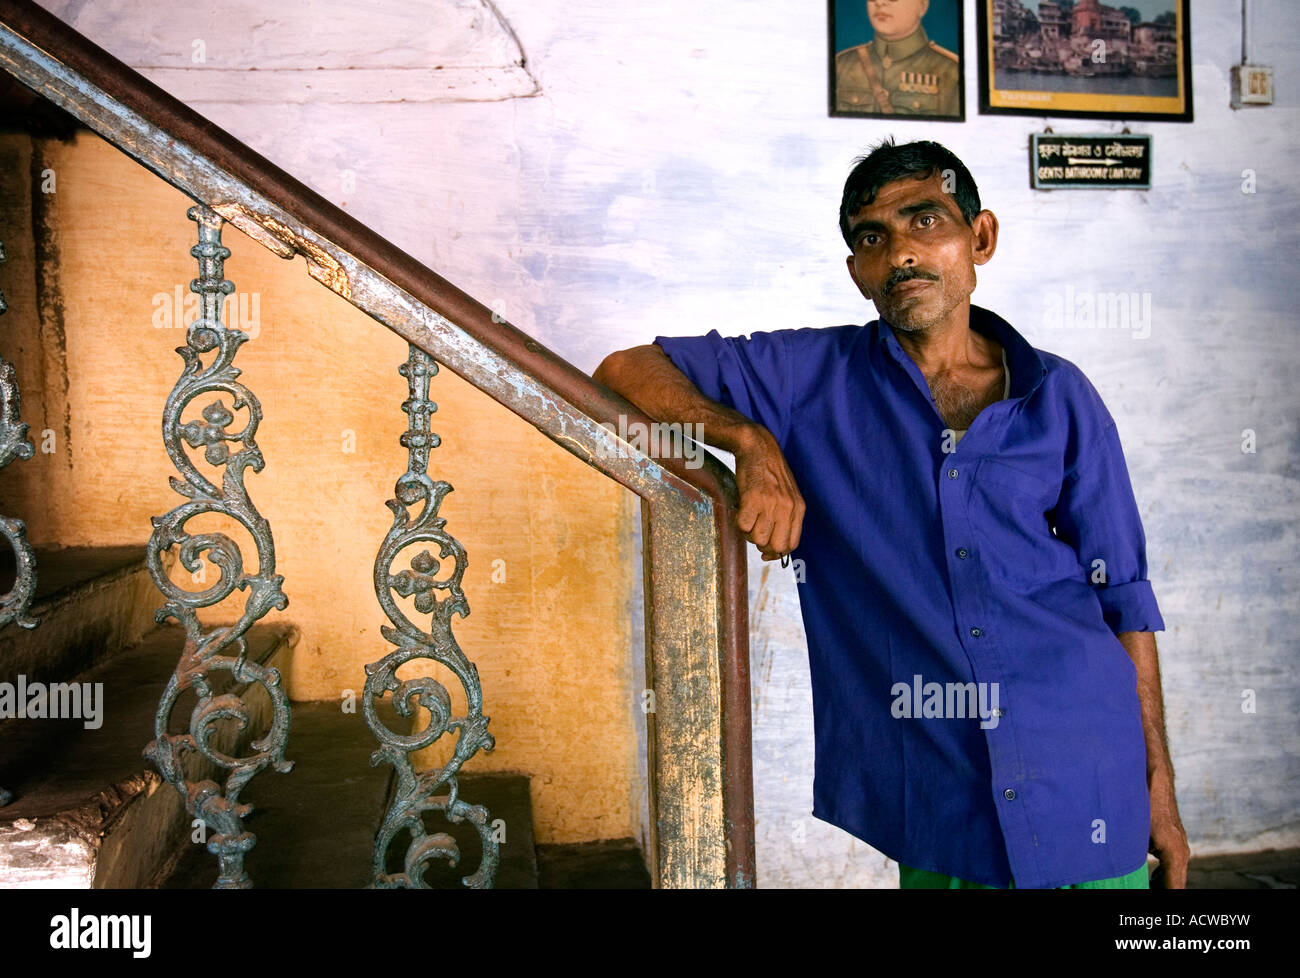 Homme debout par un escalier dans un hôpital Varanasi Bénarès Inde Banque D'Images